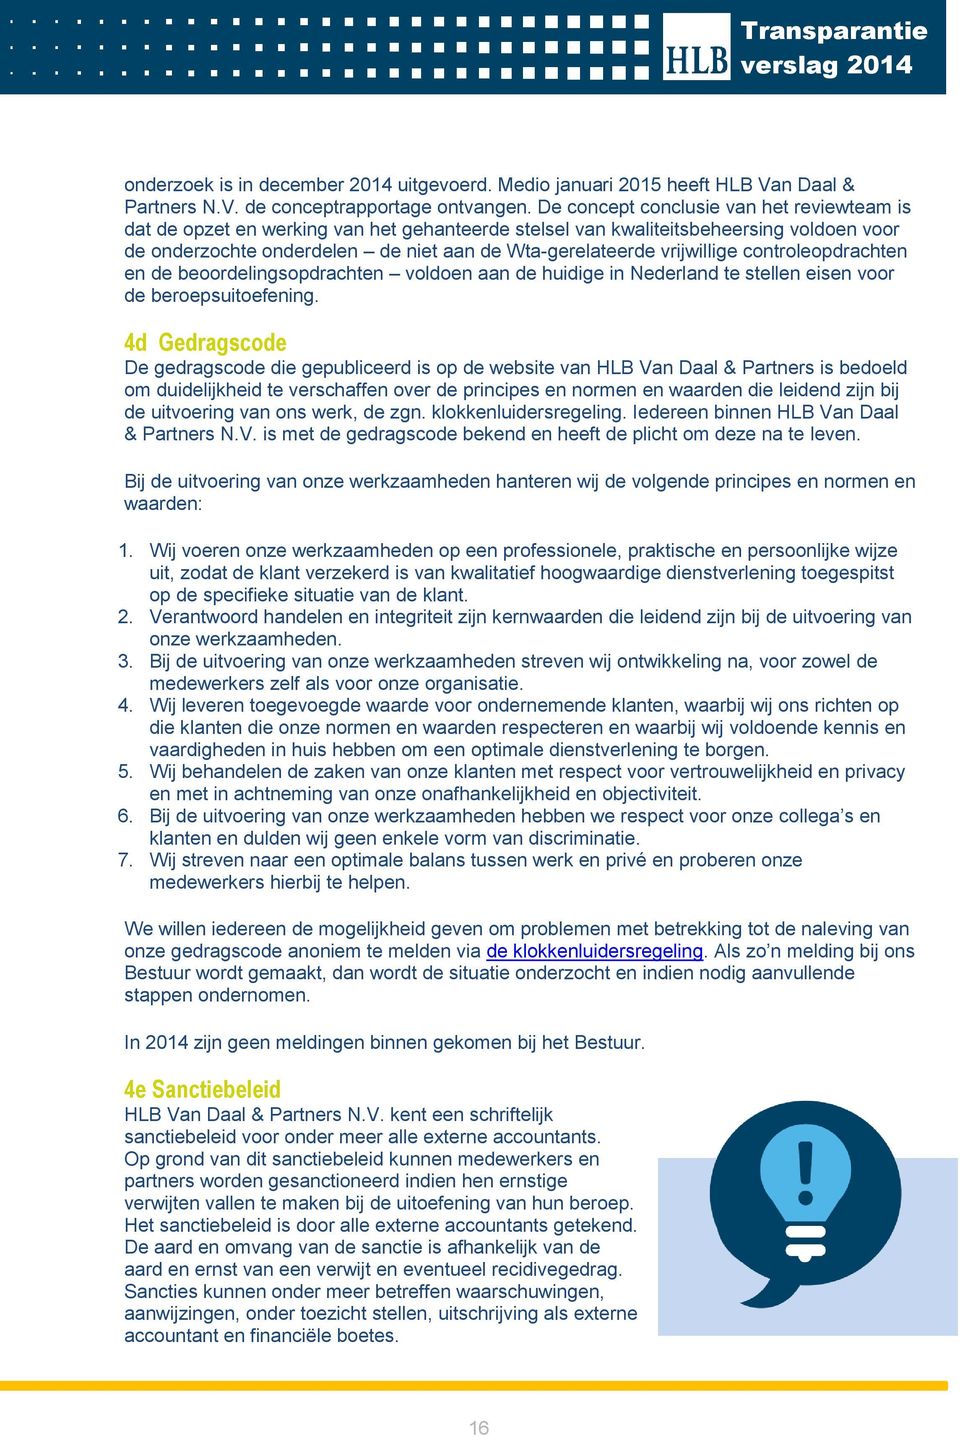 vrijwillige controleopdrachten en de beoordelingsopdrachten voldoen aan de huidige in Nederland te stellen eisen voor de beroepsuitoefening.